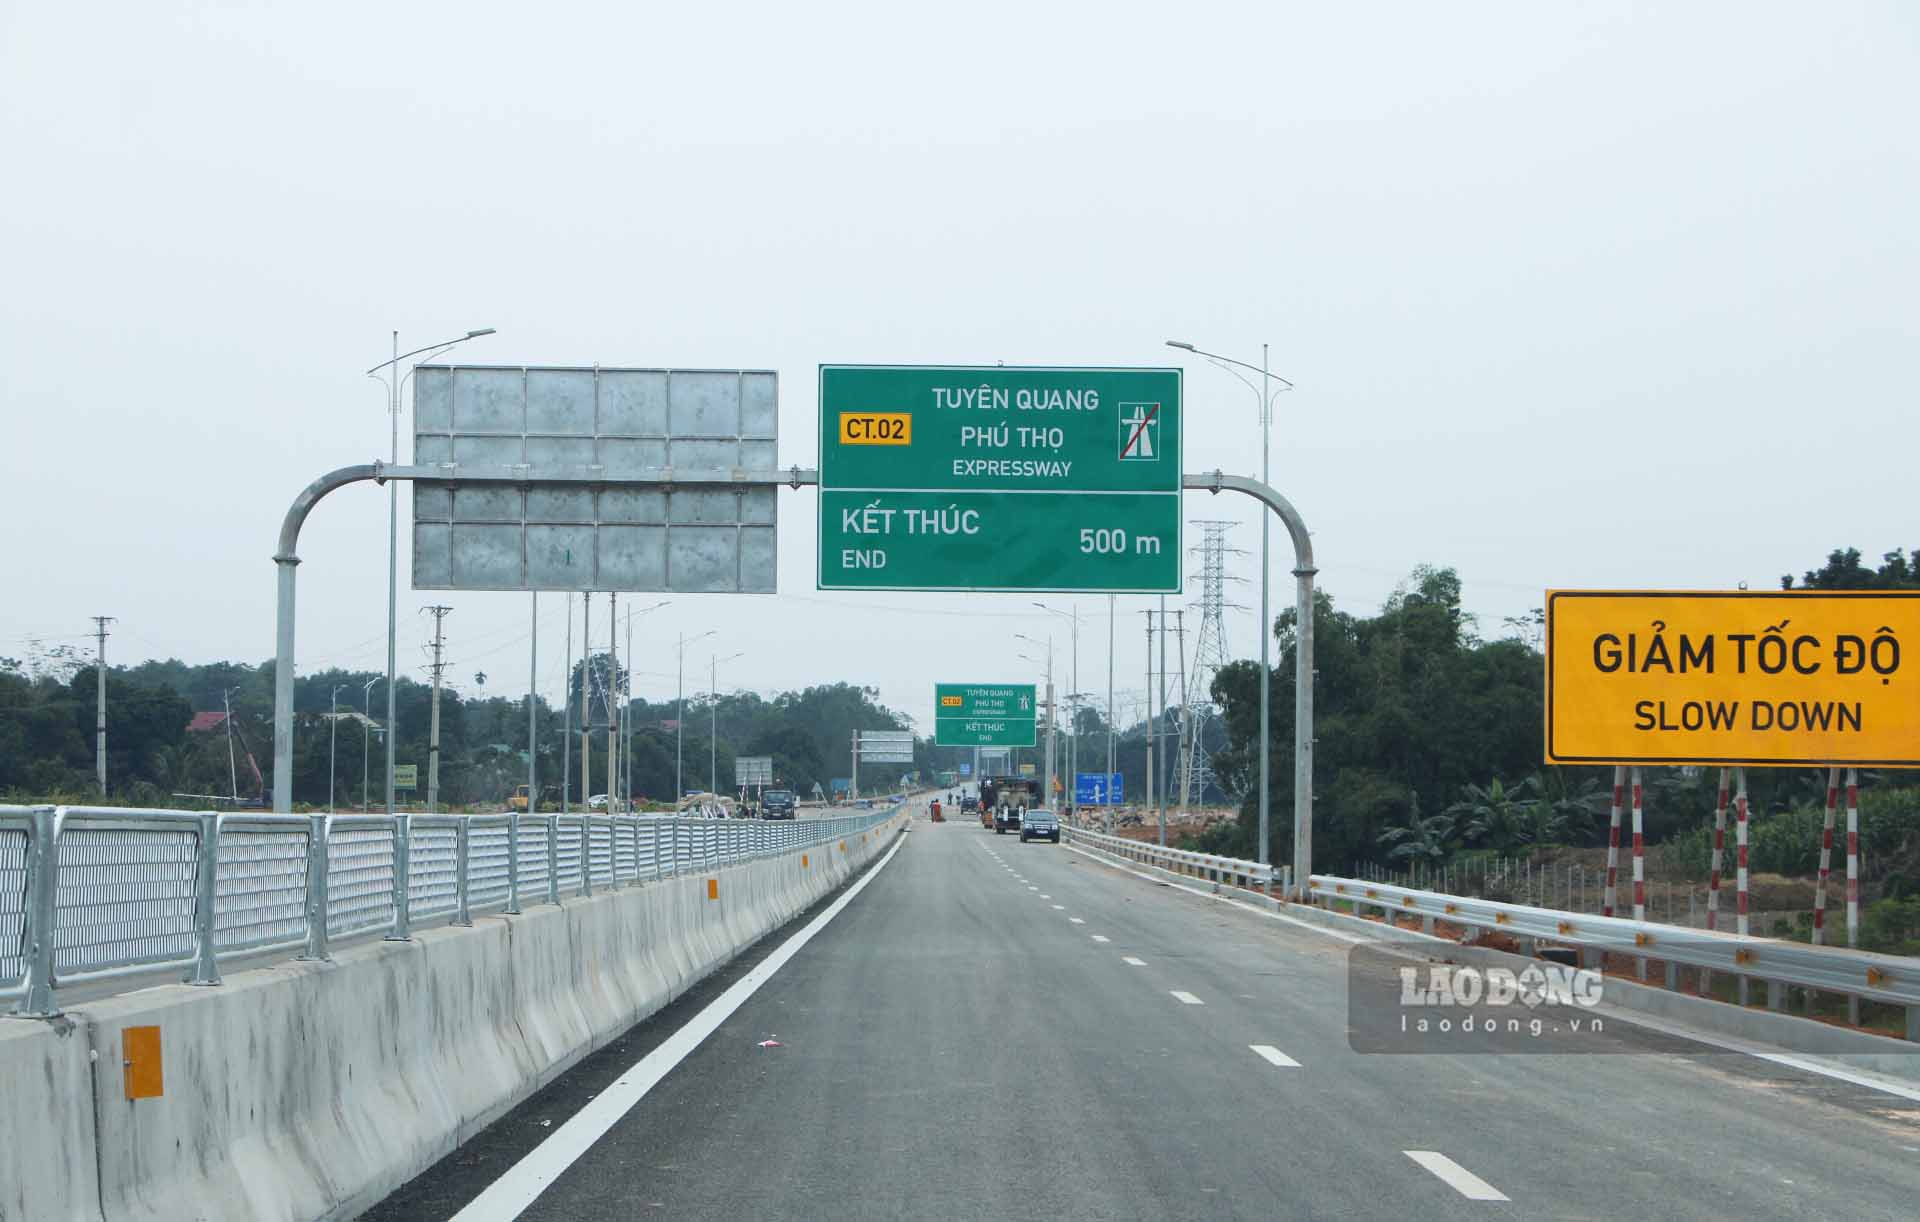 Điểm cuối của tuyến cao tốc này giao cắt với đường Hồ Chí Minh (tại Thị xã Phú Thọ) và cách nút giao IC9 cao tốc Nội Bài - Lào Cai khoảng hơn 2km.